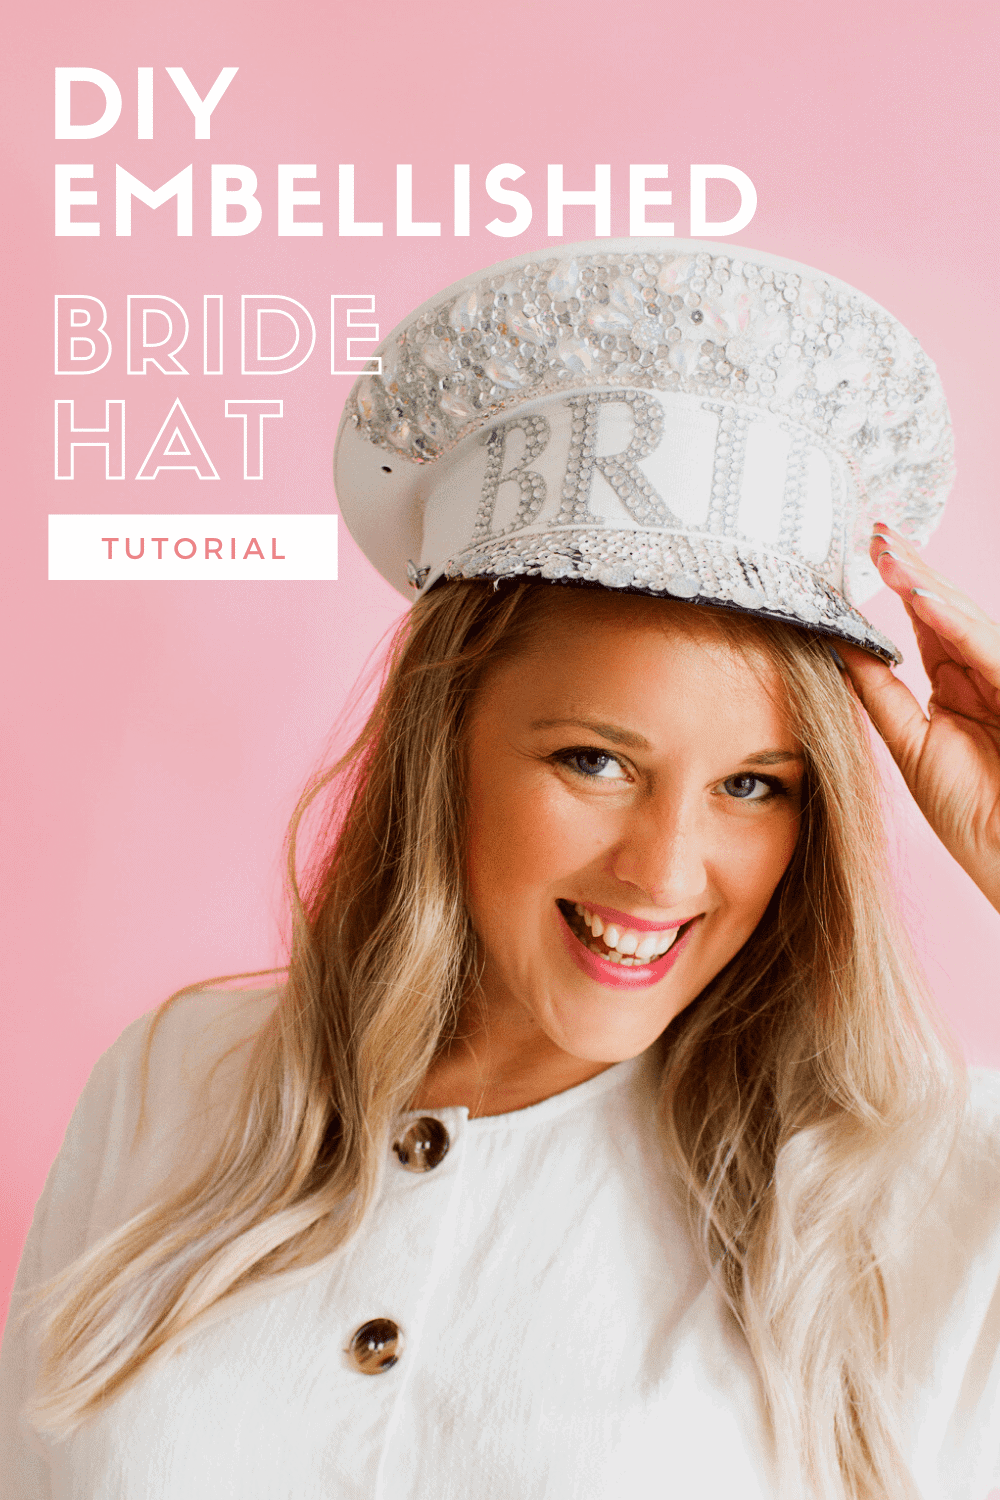 DIY EMBELLISHED BRIDE CAPTAIN HAT